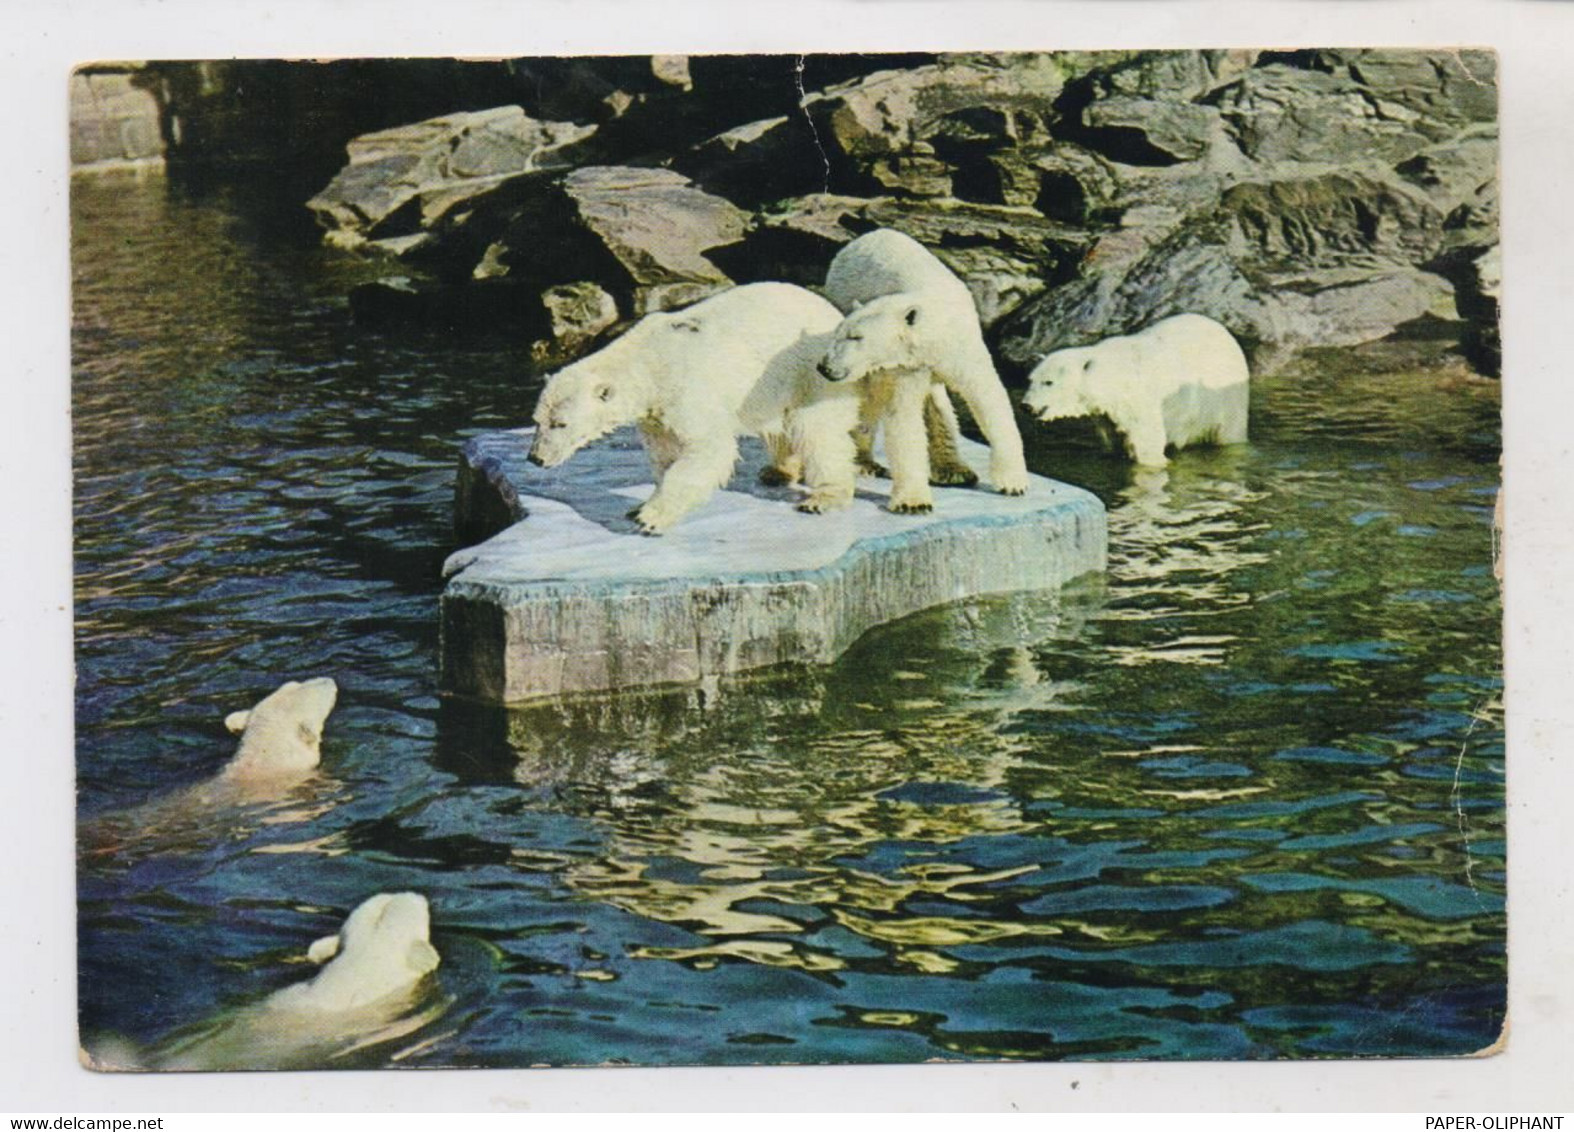 1000 BERLIN - FRIEDRICHSFELD, Tierpark Berlin (Zoo), ,Eisbären - Hohenschönhausen